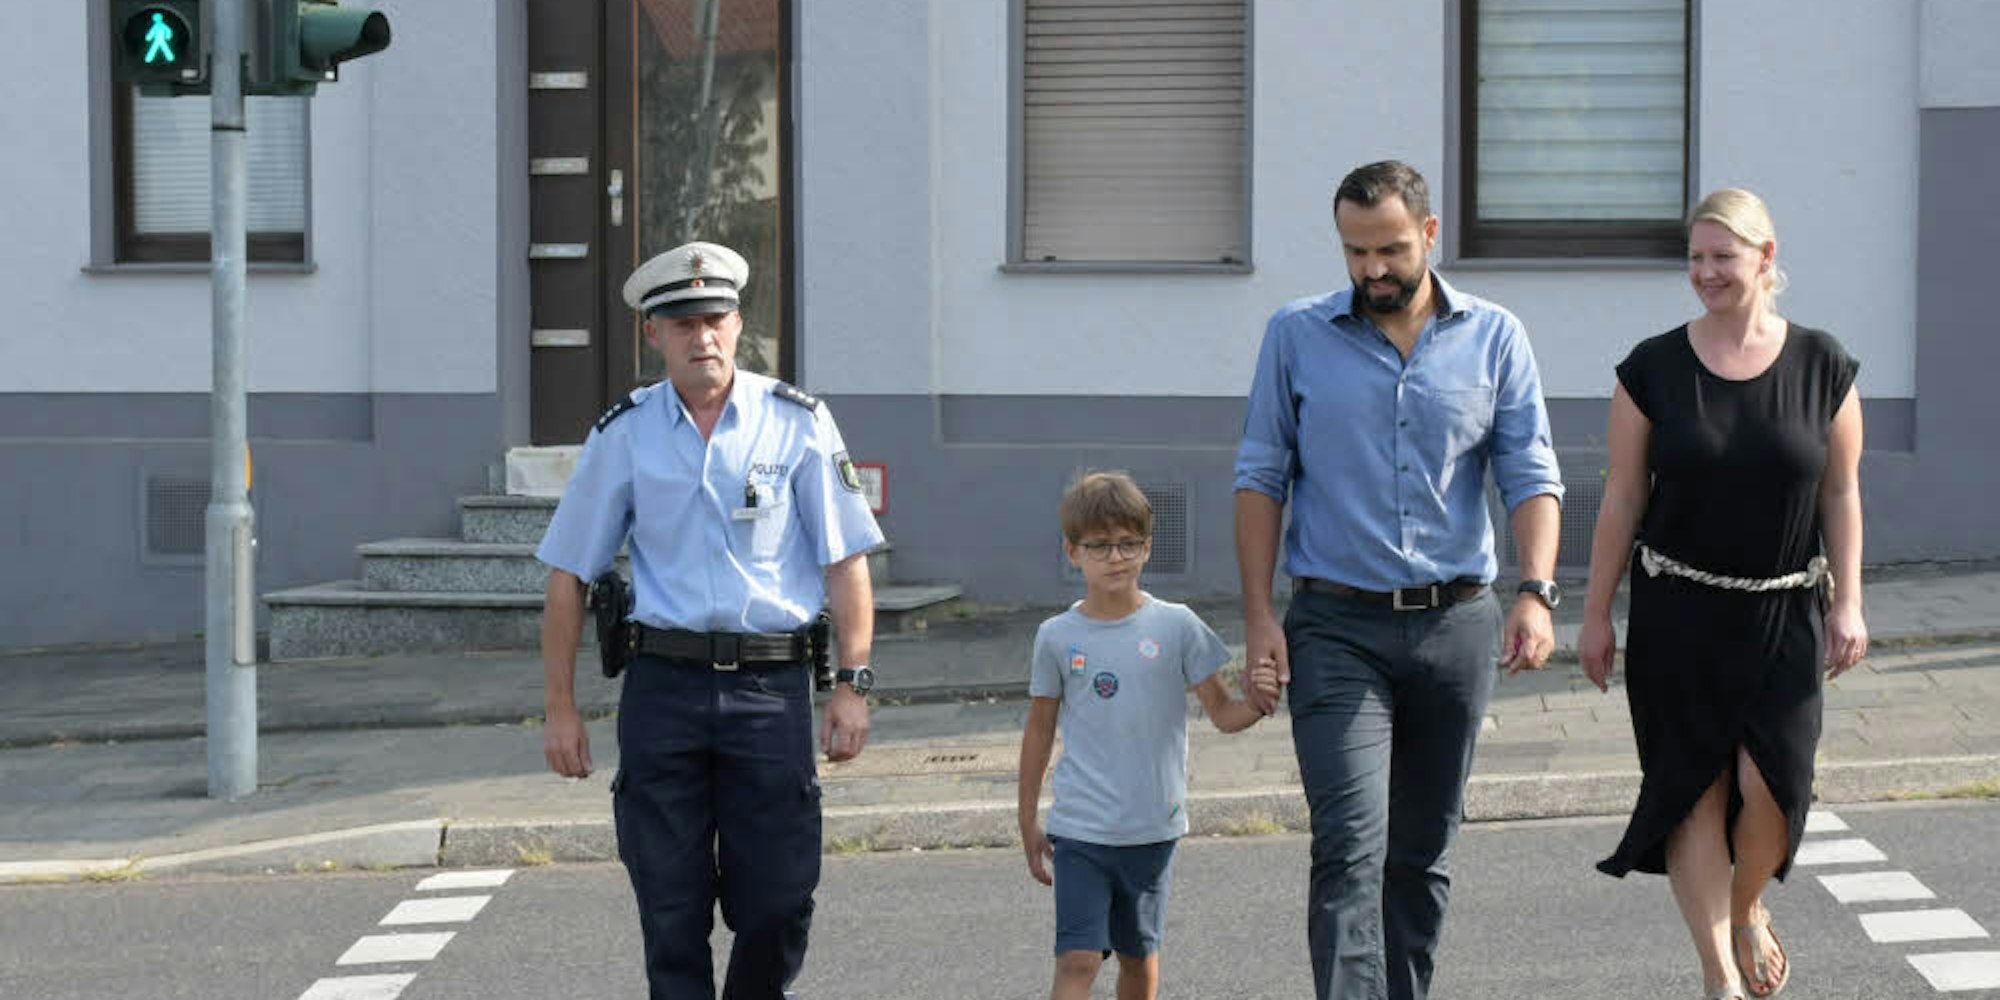 Polizist Manfred Wrana, der sechsjährige Daron und seine Eltern üben das richtige Verhalten an der Ampel.